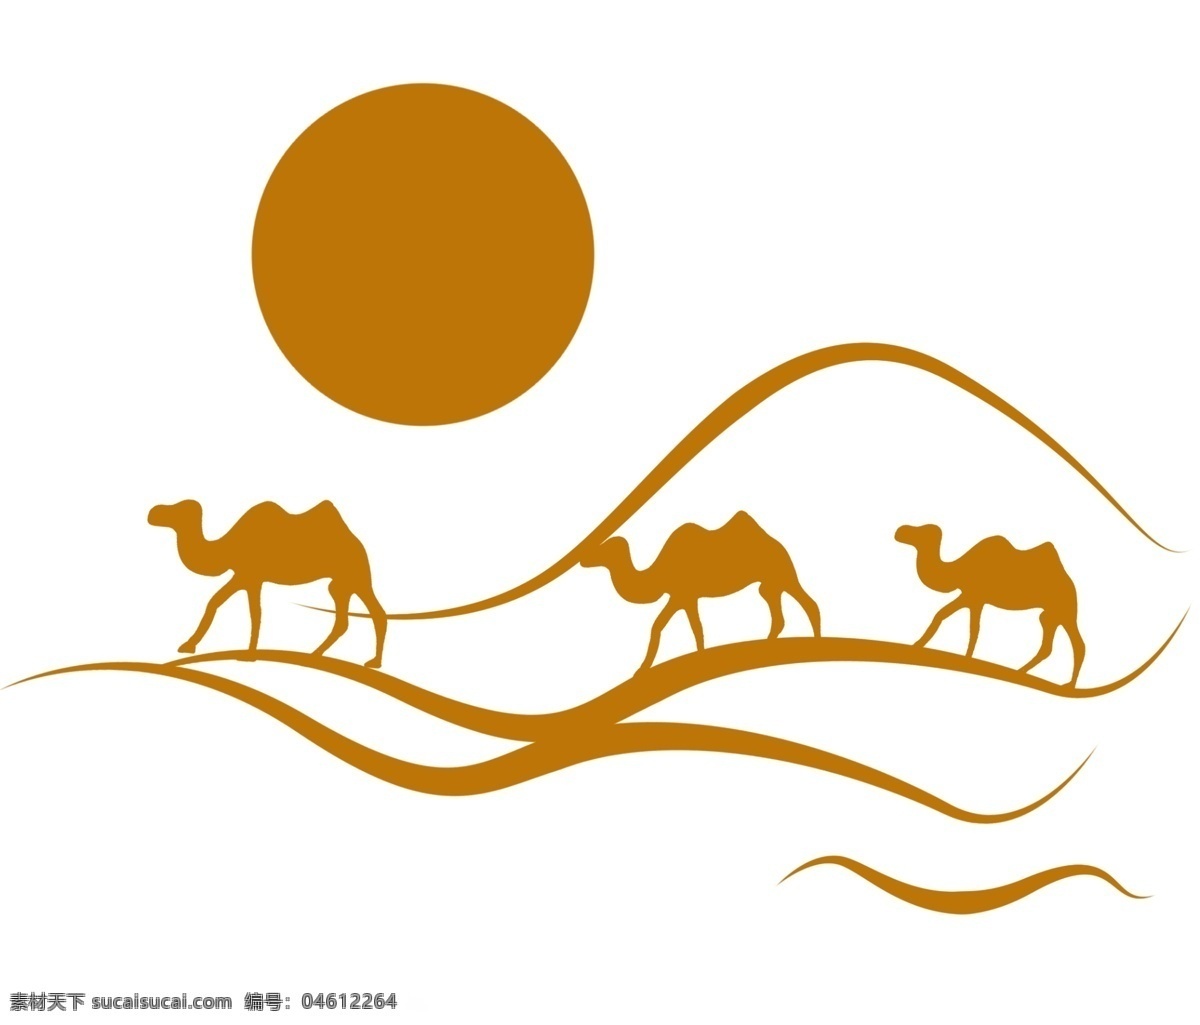 沙漠 里 骆驼 插画 沙漠骆驼 骆驼剪影 沙漠层叠 沙堆 沙丘 层次沙丘 落日余晖 落日 丝绸之路 企业文化背景 沙漠背景 沙漠场景 沙漠插画 ps插画 动漫动画